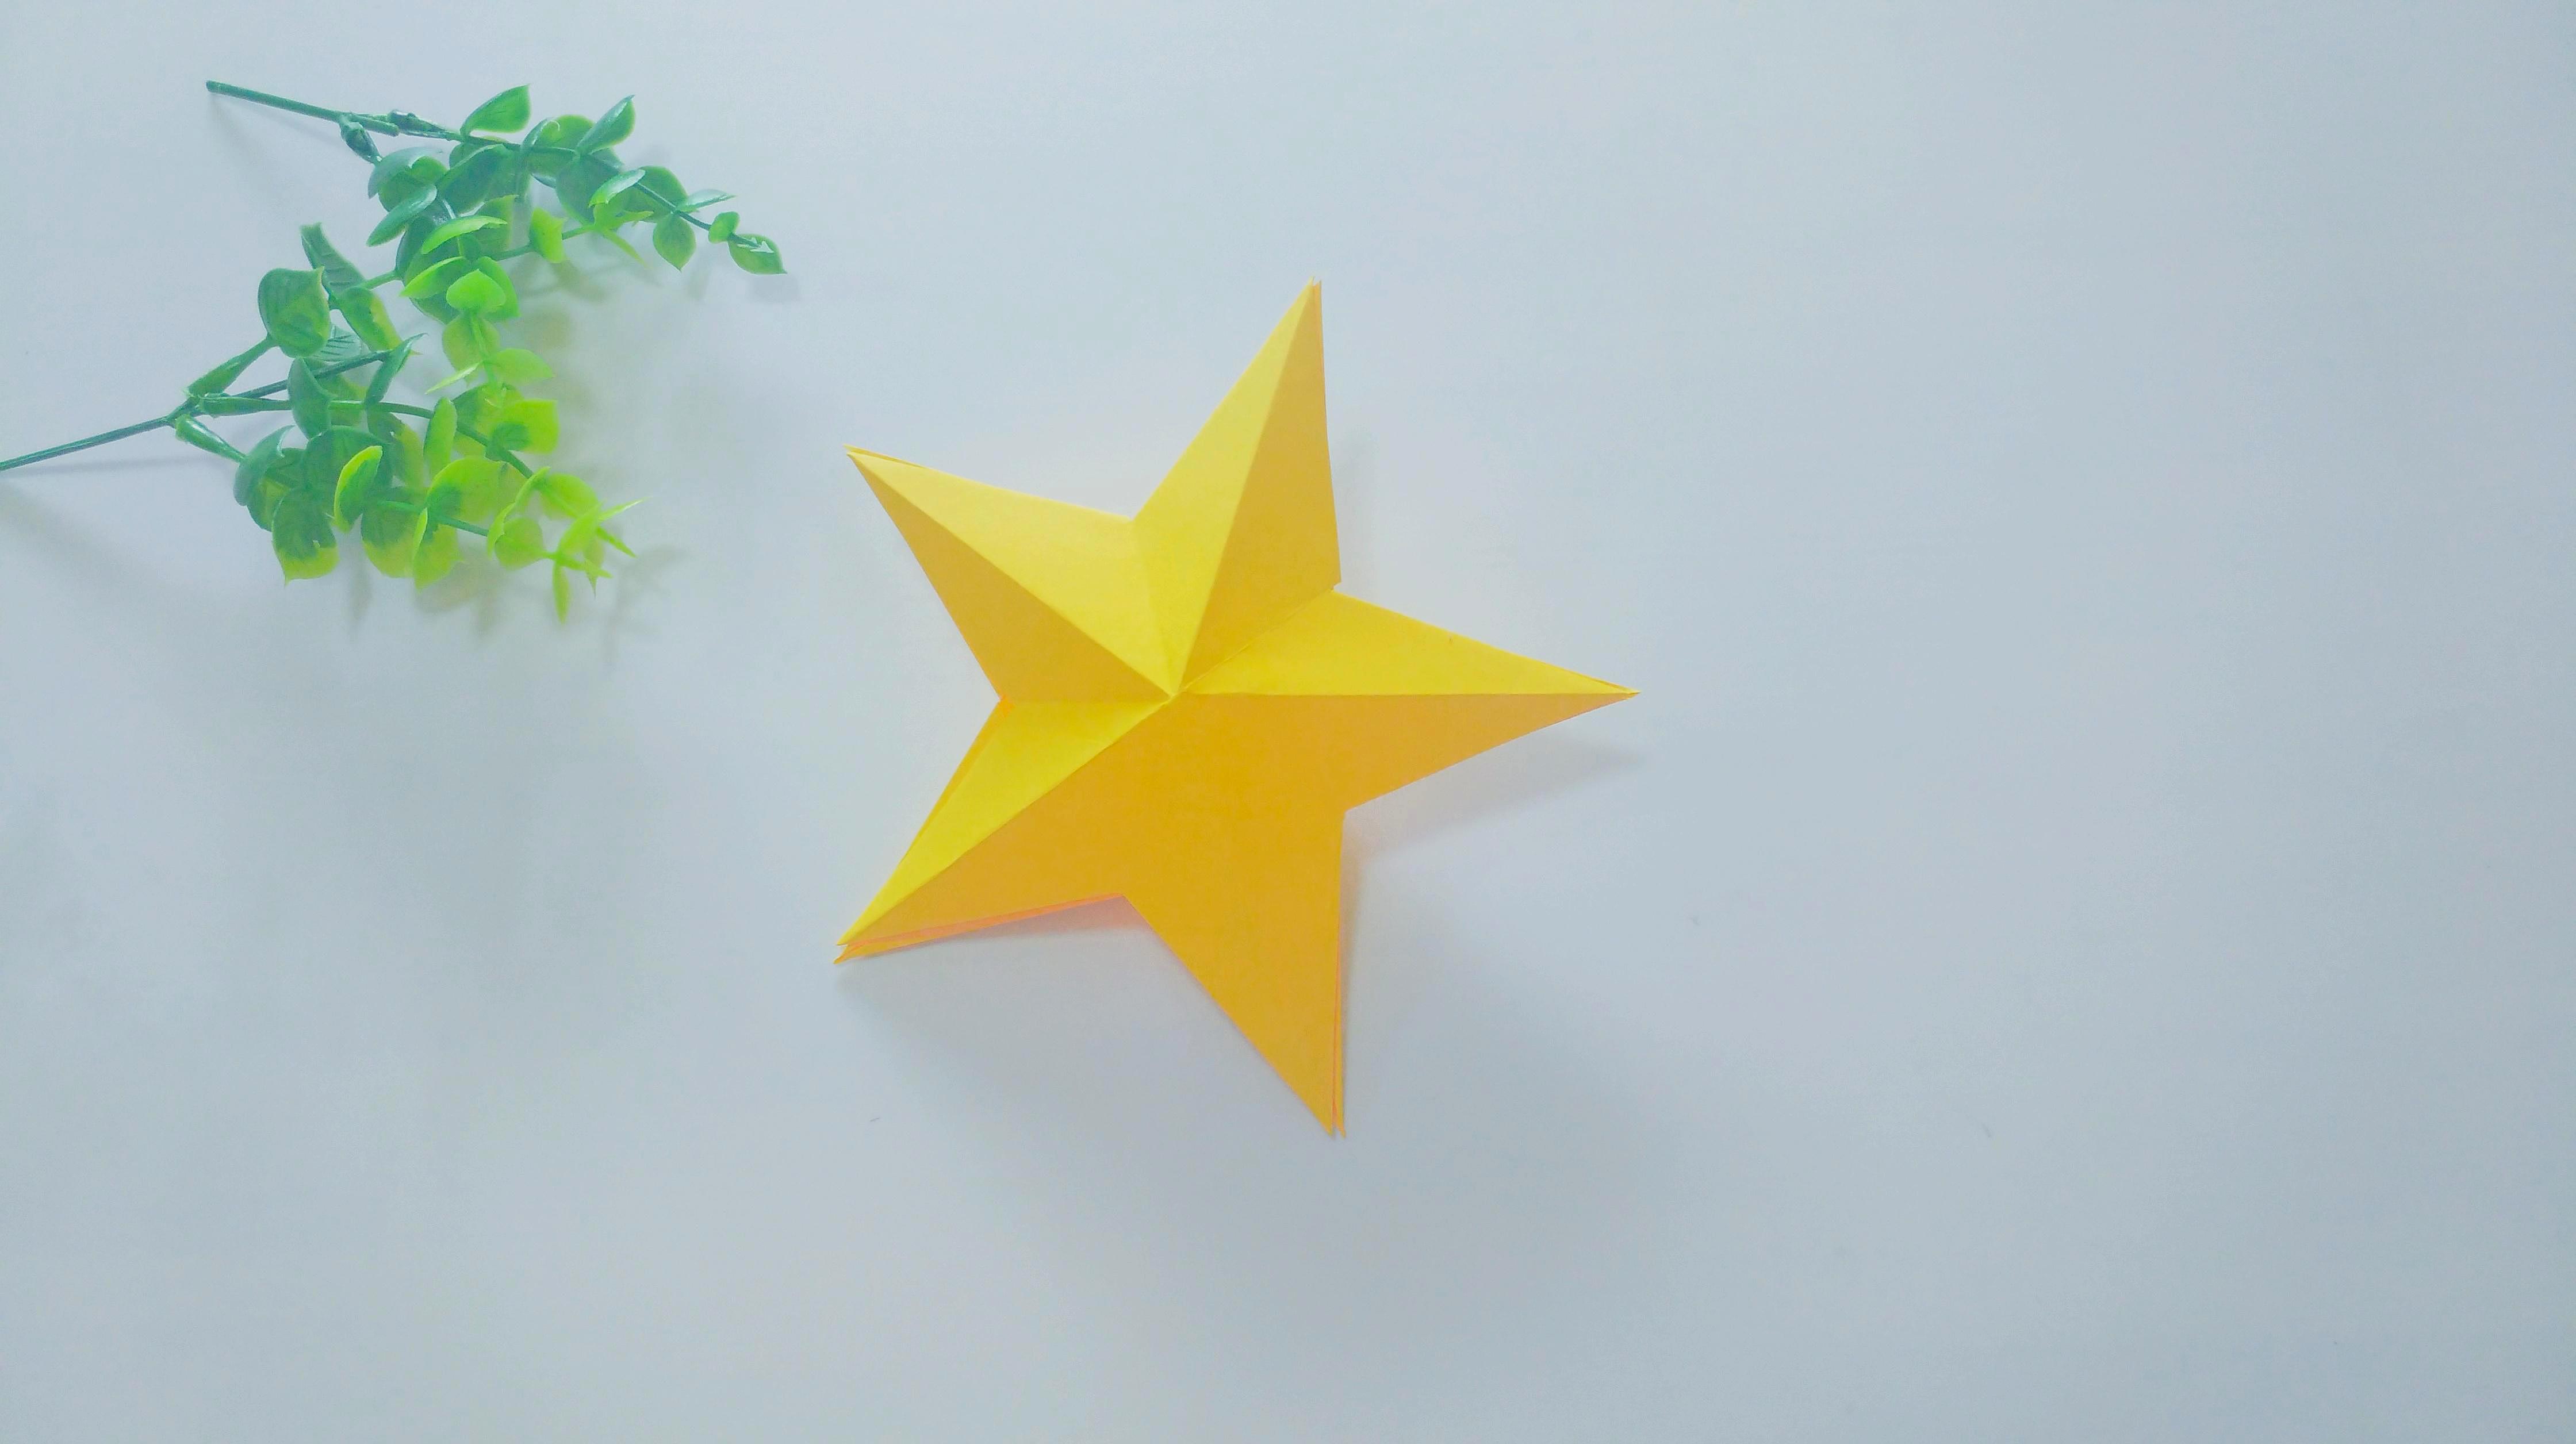 立体星星折纸,简单好学,还非常漂亮